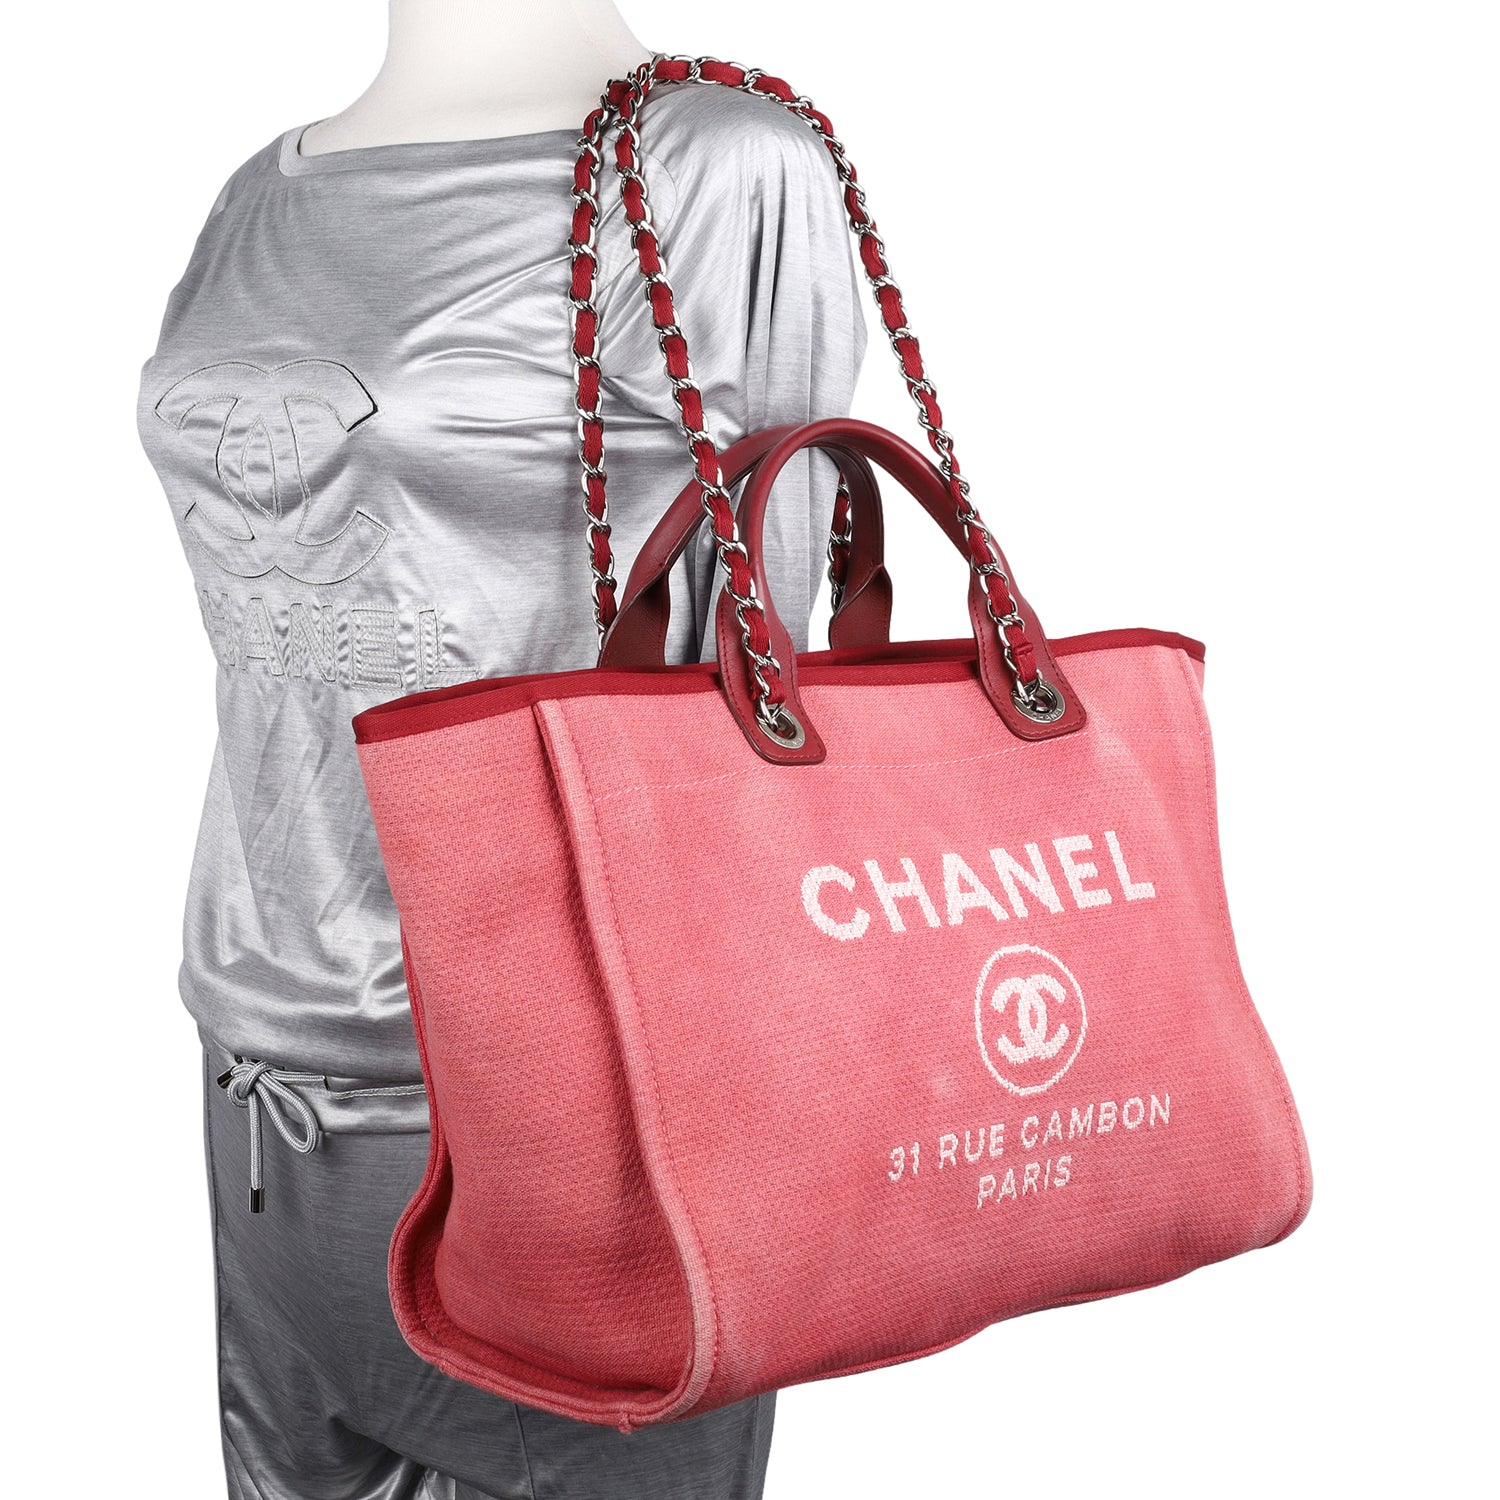 Handbags — Fashion